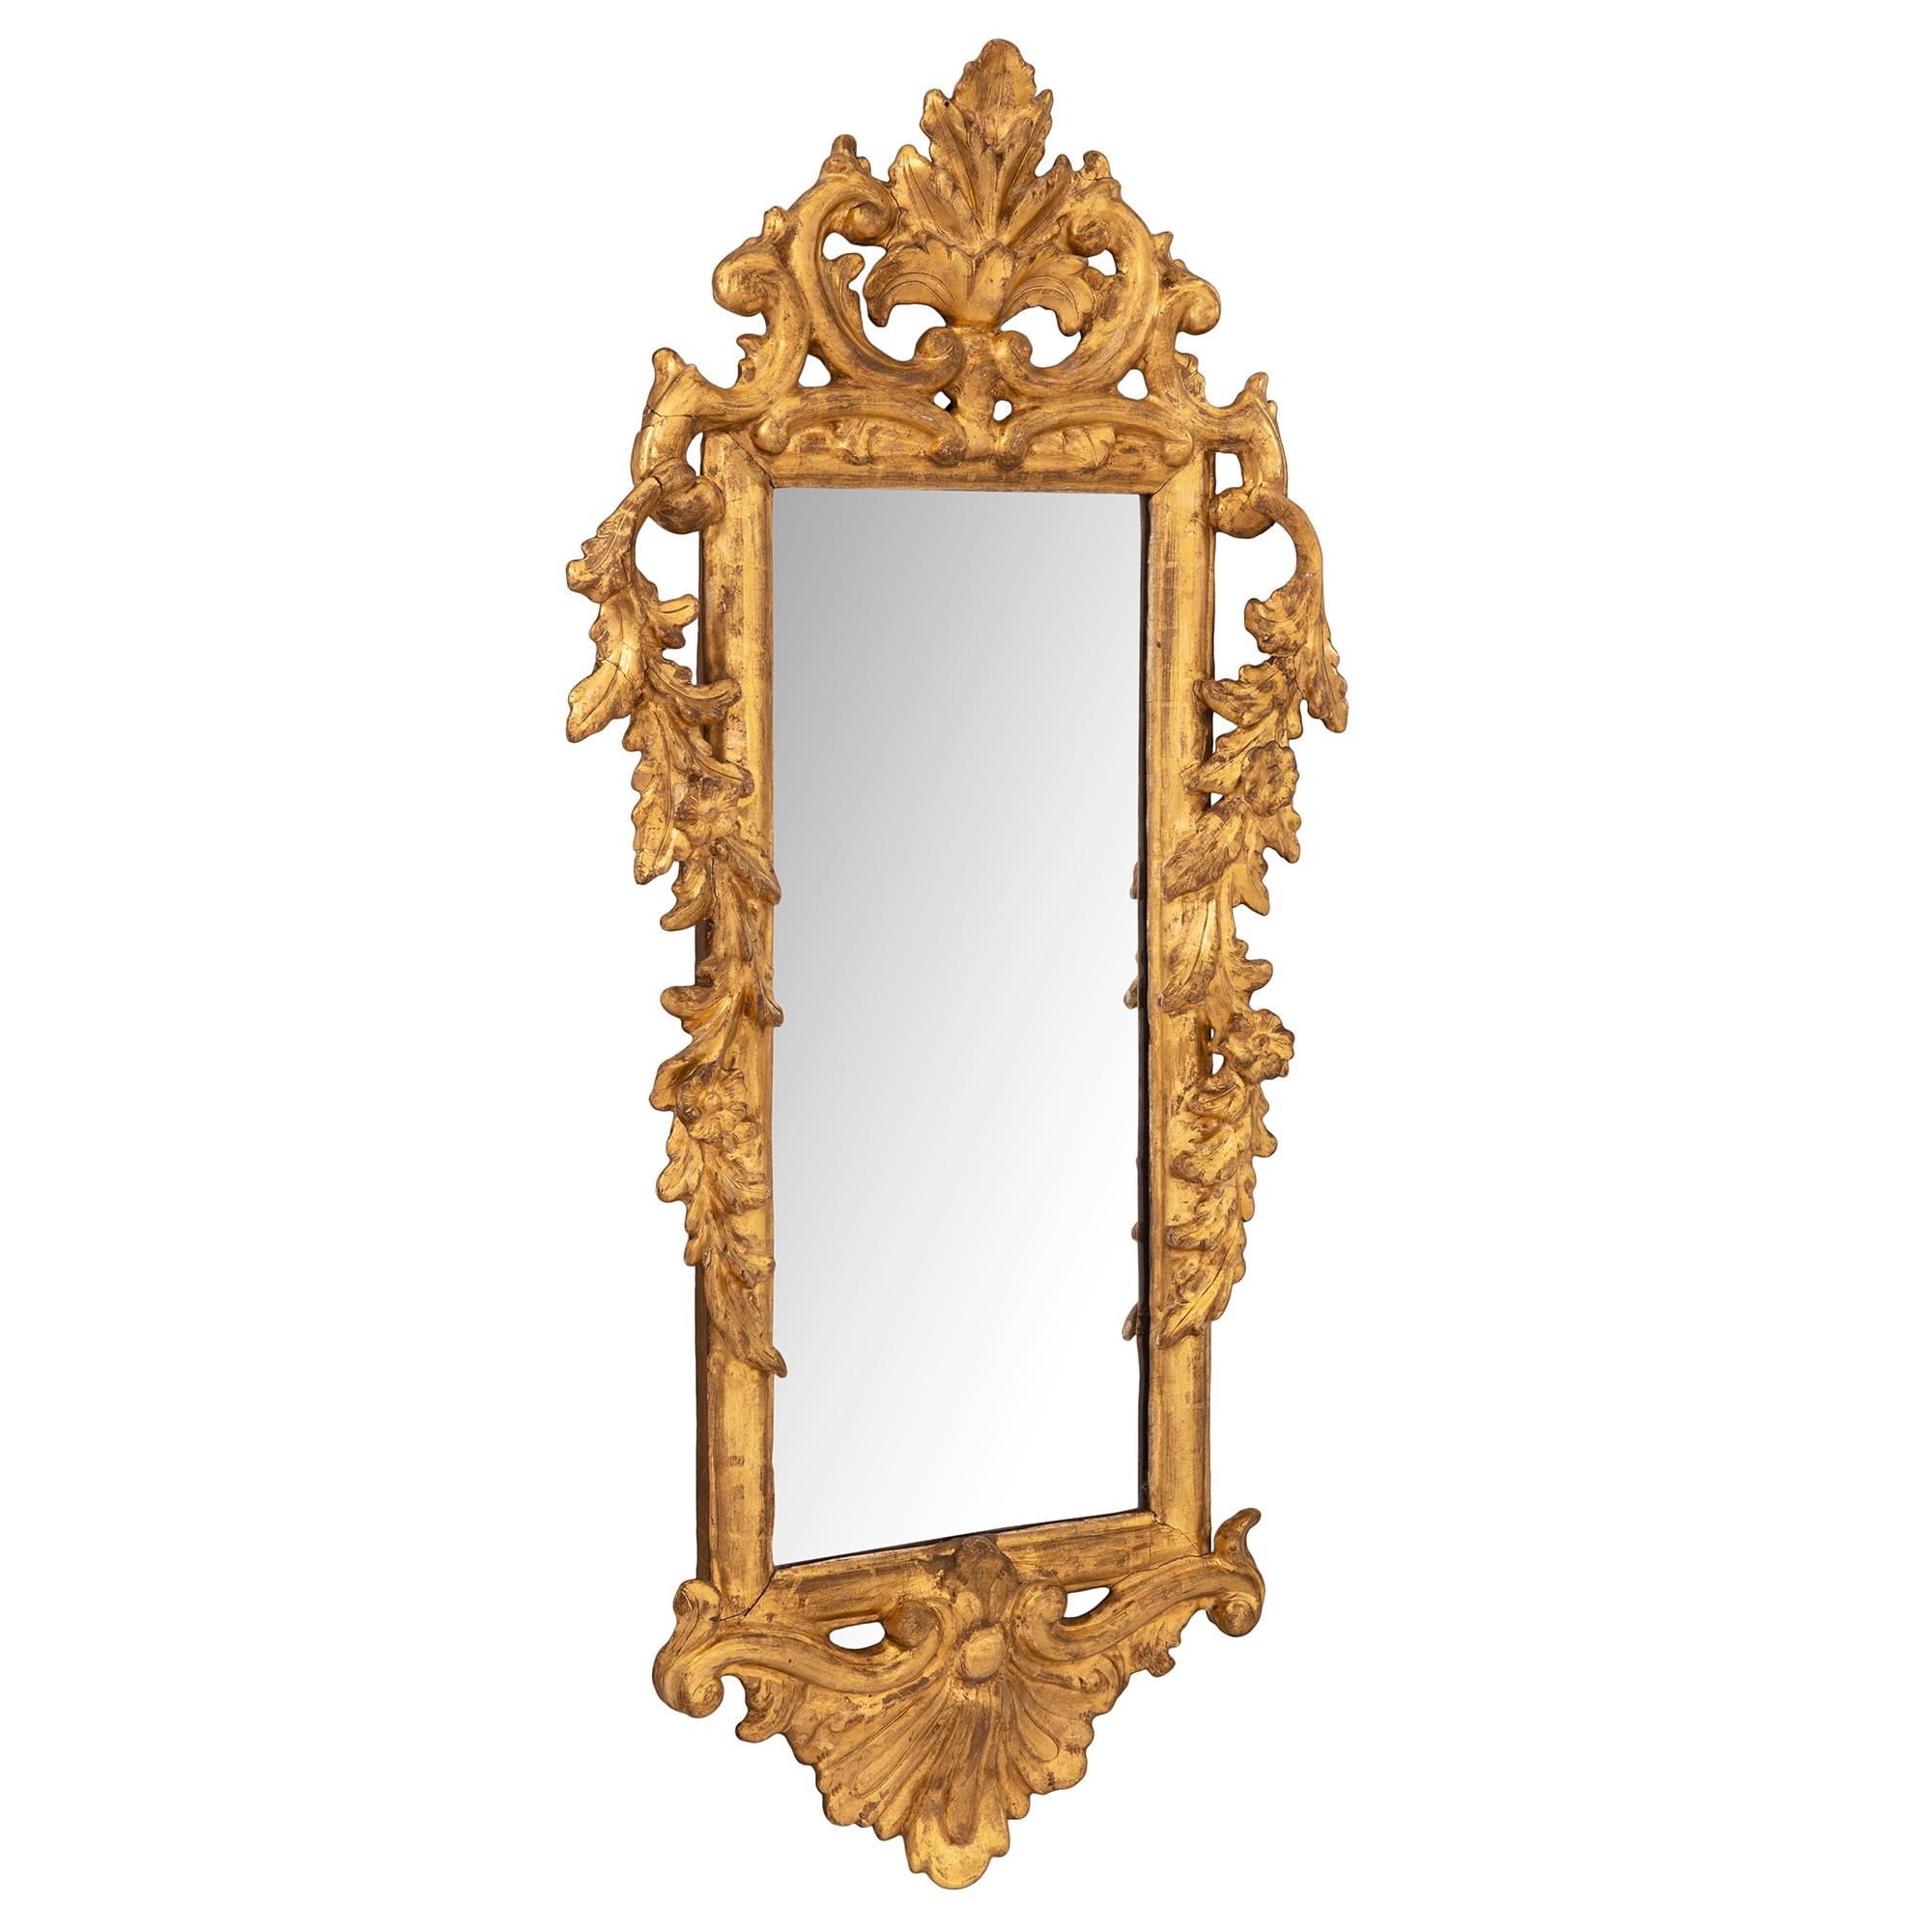 Une très belle paire de miroirs italiens en bois doré de style Rococo du 18ème siècle. Chaque miroir d'une taille unique est placé dans un cadre rectangulaire en bois doré avec des guirlandes florales drapées en forme de 